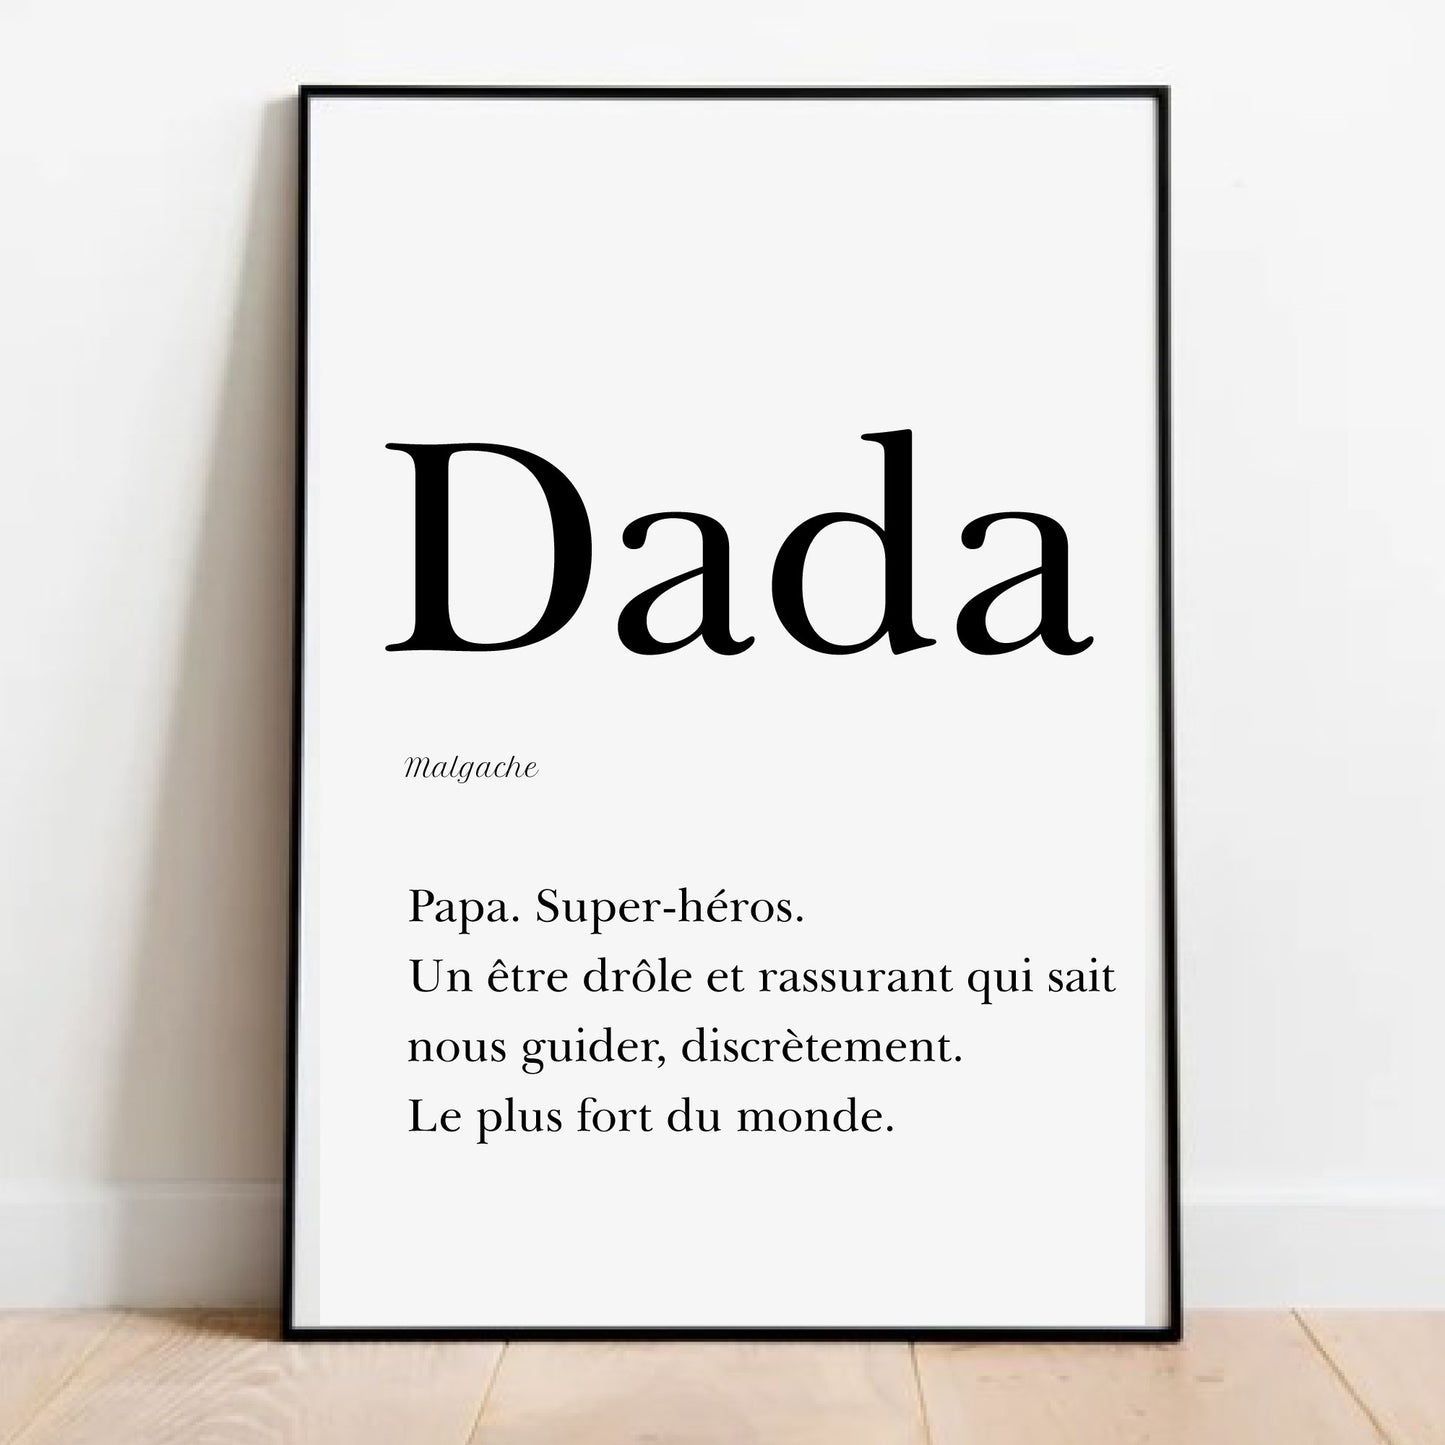 Dad in Malagasy -  "Dada" 